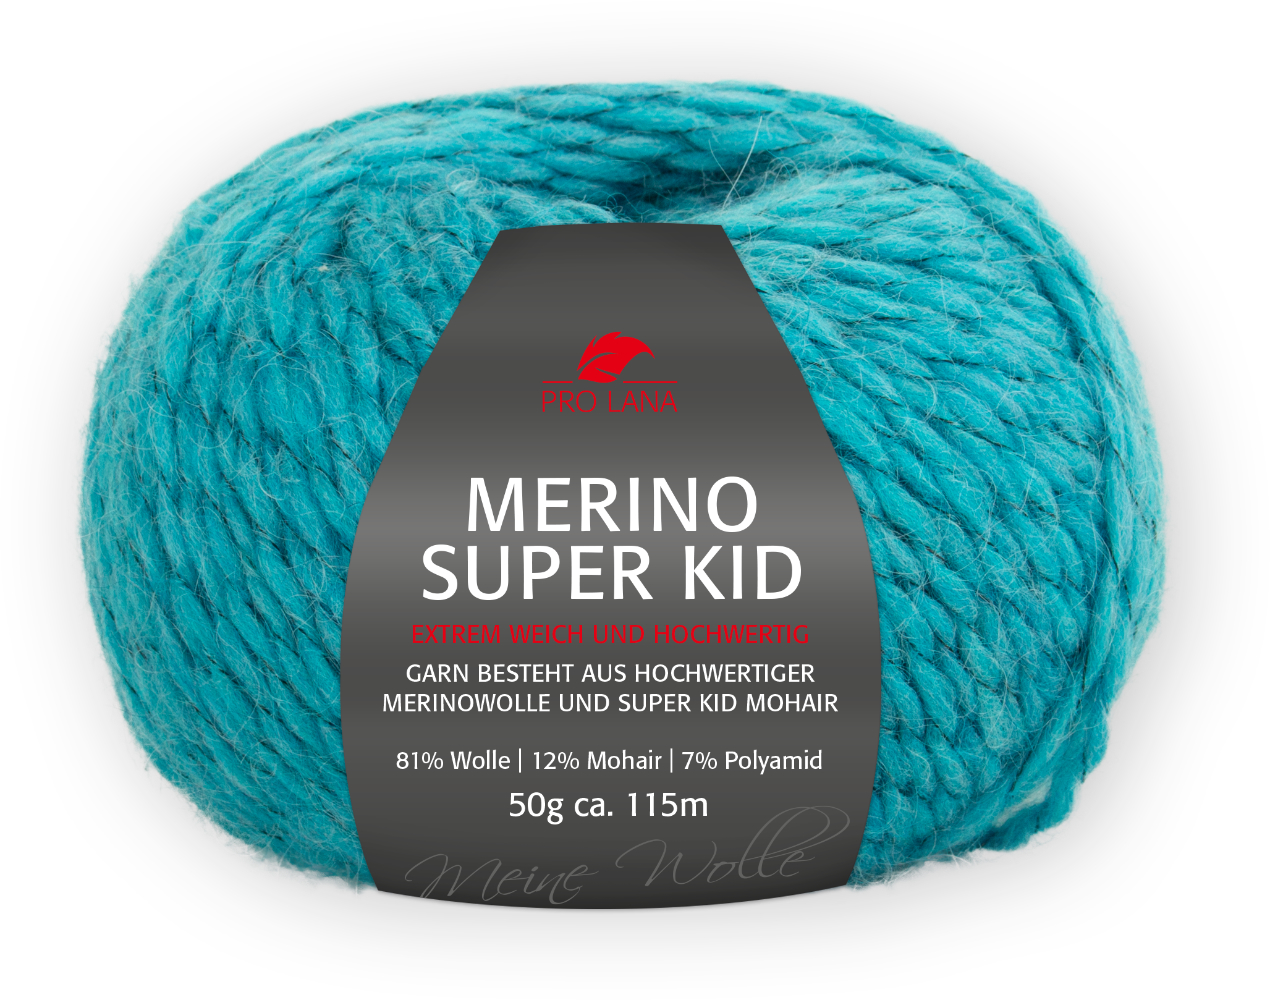 Merino Super Kid von Pro Lana 0168 - petrol meliert